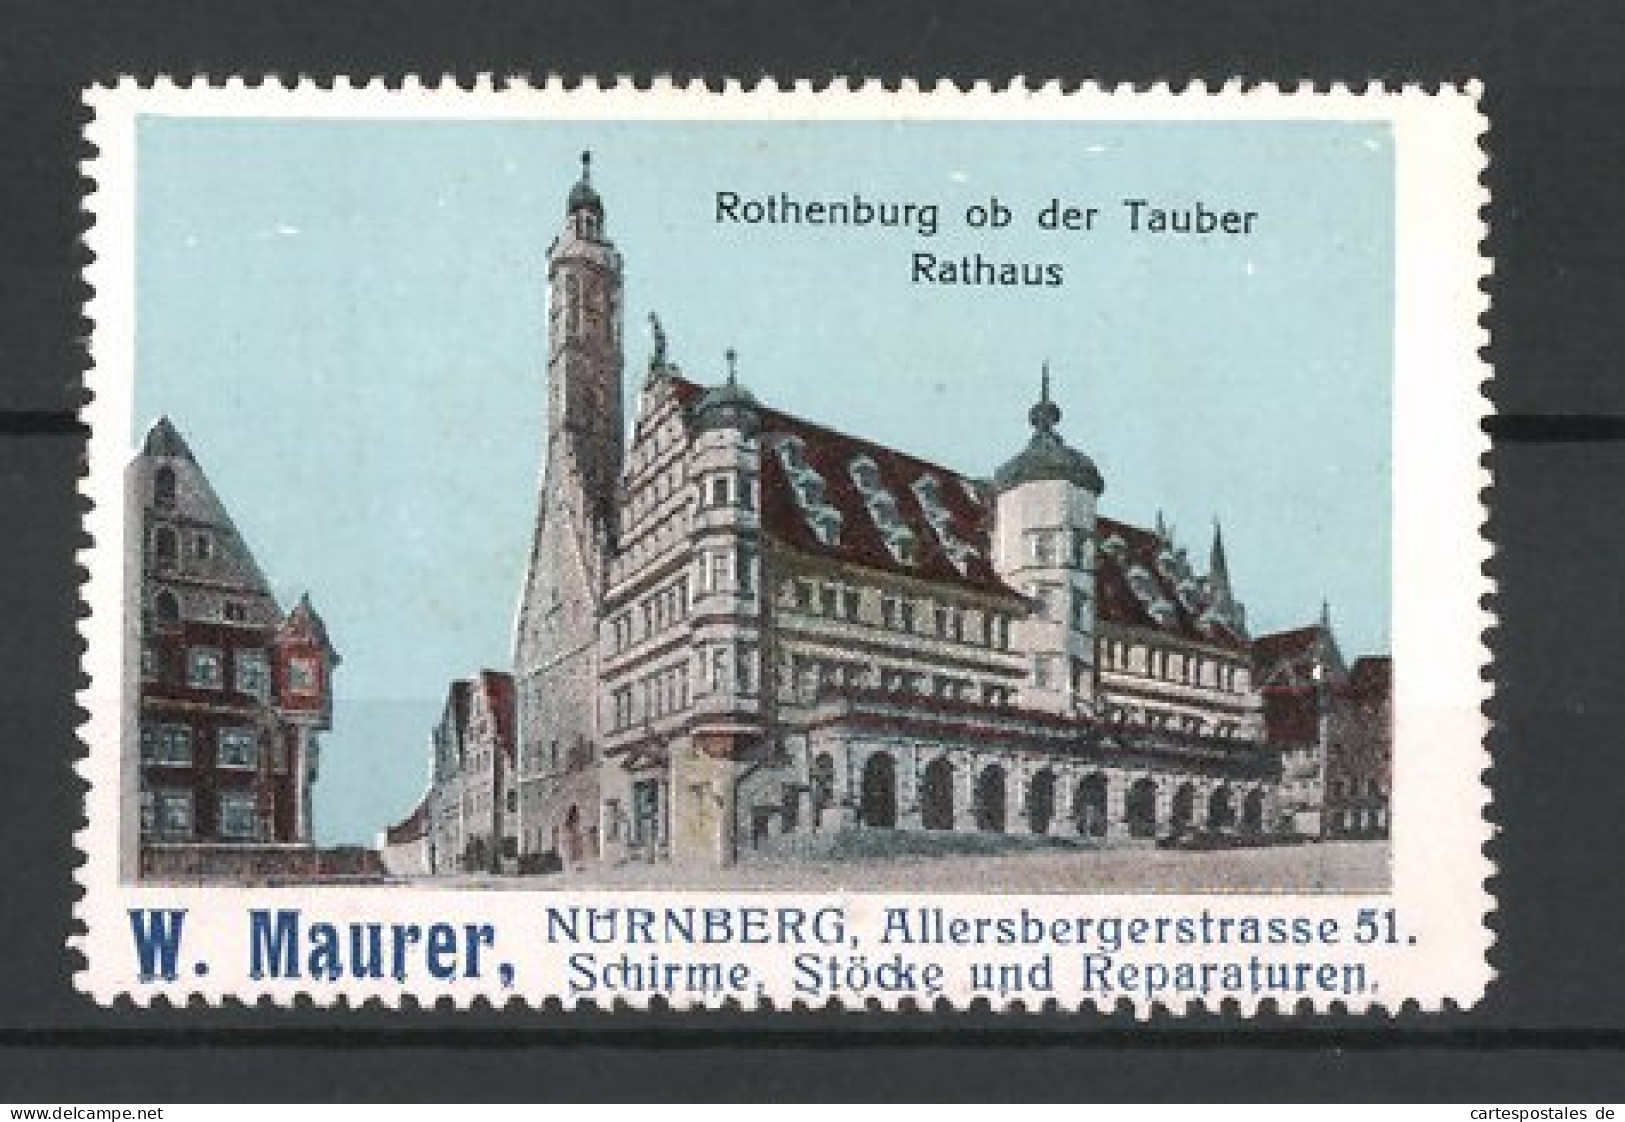 Reklamemarke Rothenburg Ob Der Tauber, Rathaus, Schirme & Stöcke Der Firma W. Maurer, Nürnberg  - Cinderellas